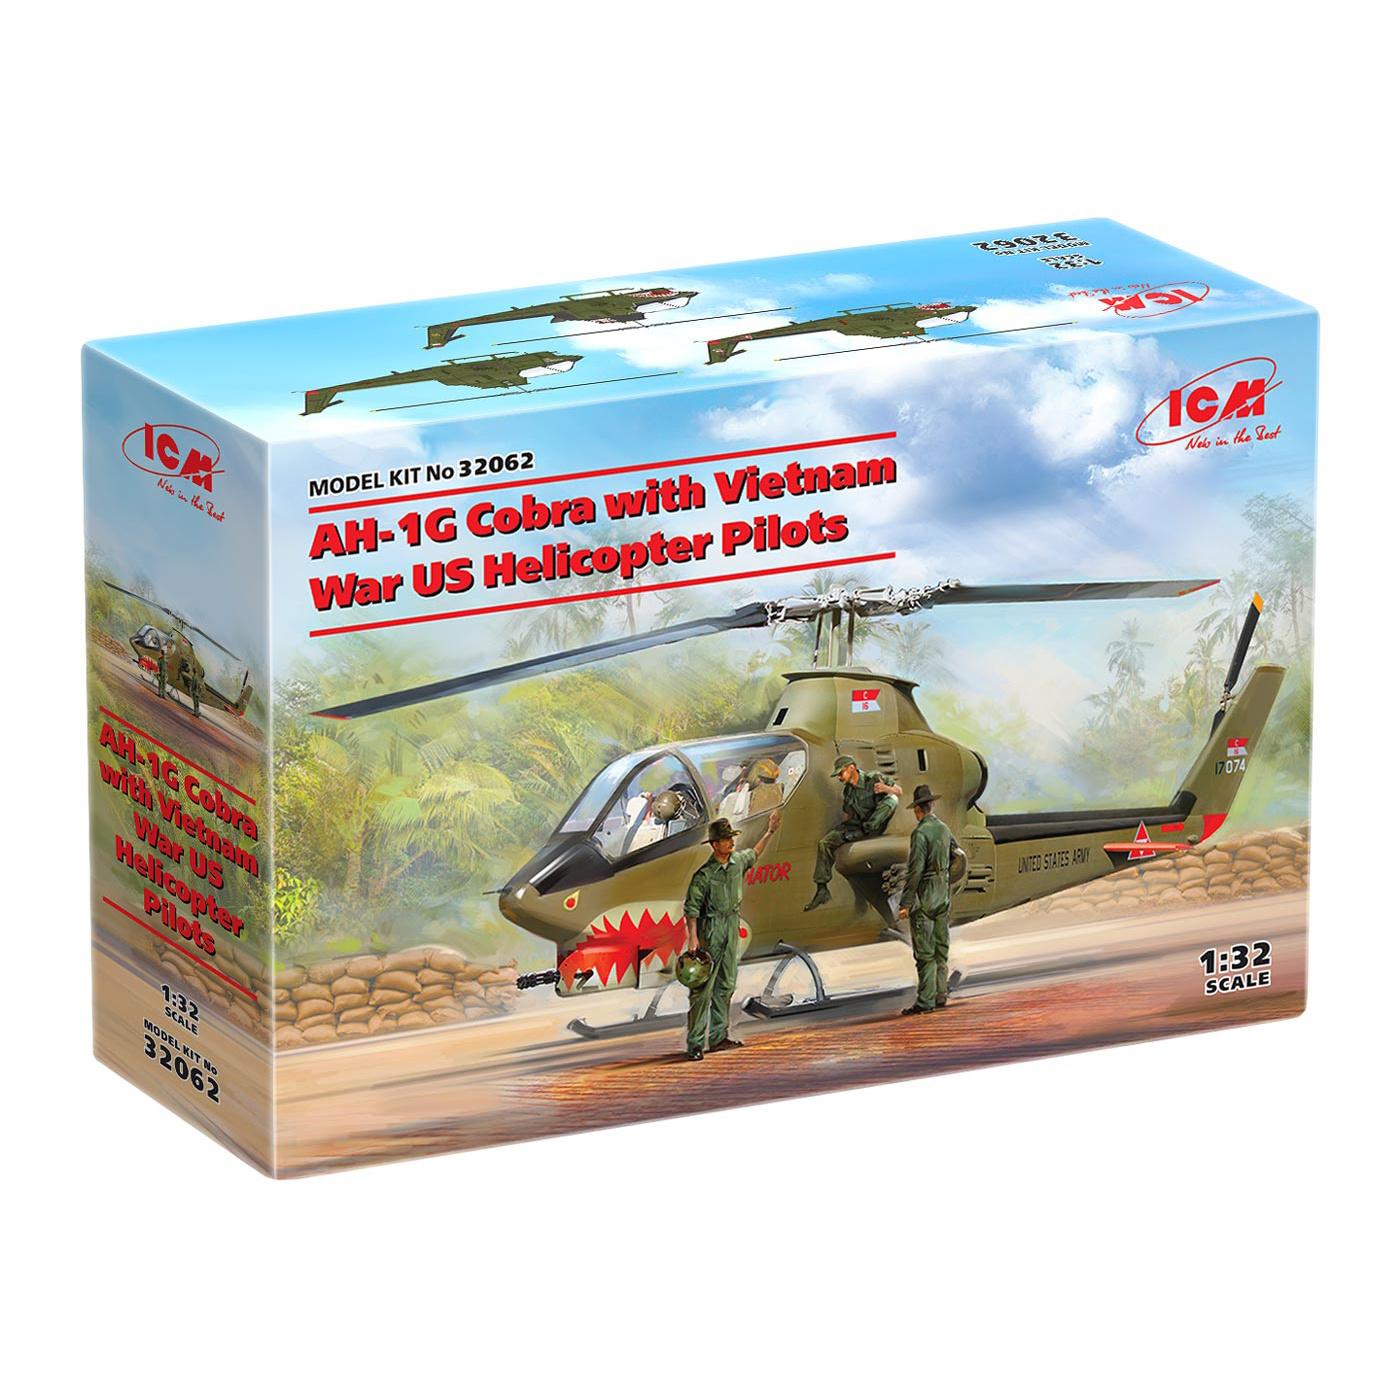 32062 ICM 1/32 AH-1G Cobra с американскими вертолетчиками (война во Вьетнаме)